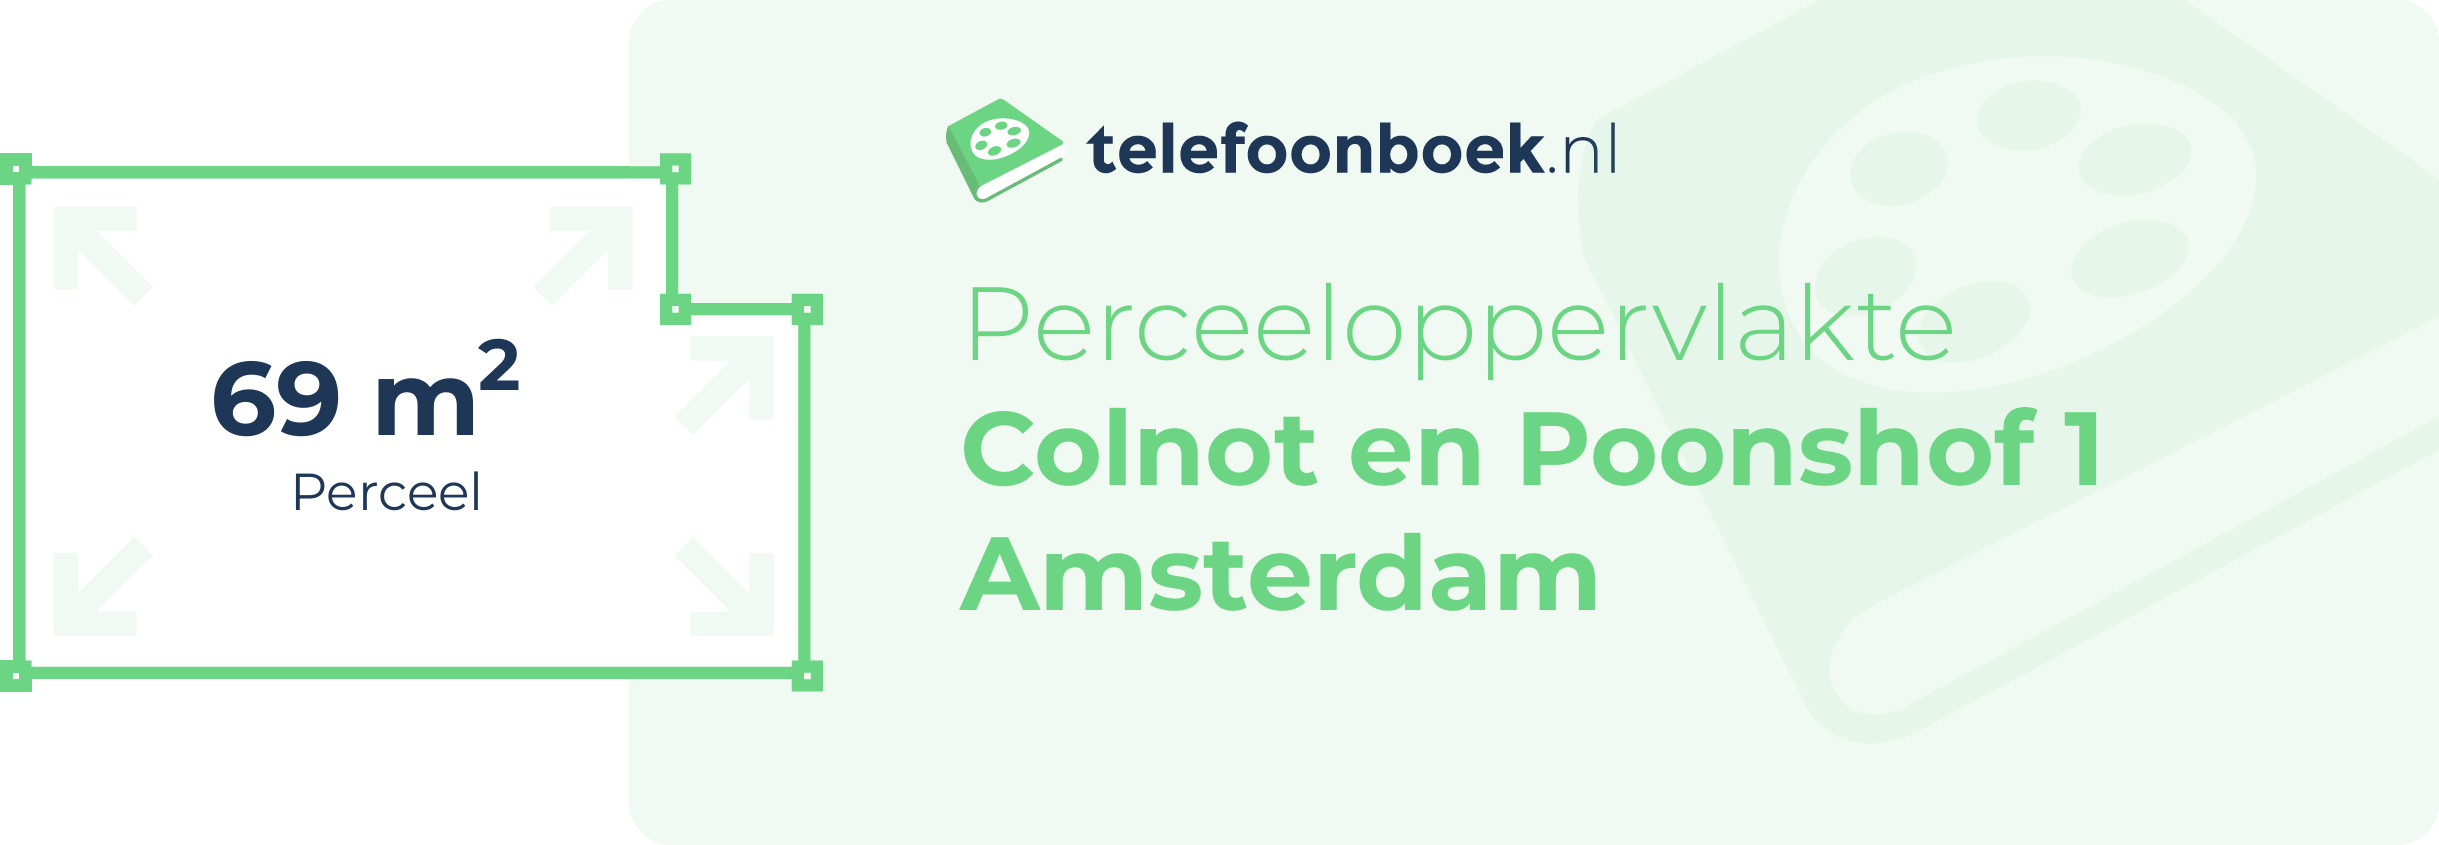 Perceeloppervlakte Colnot En Poonshof 1 Amsterdam